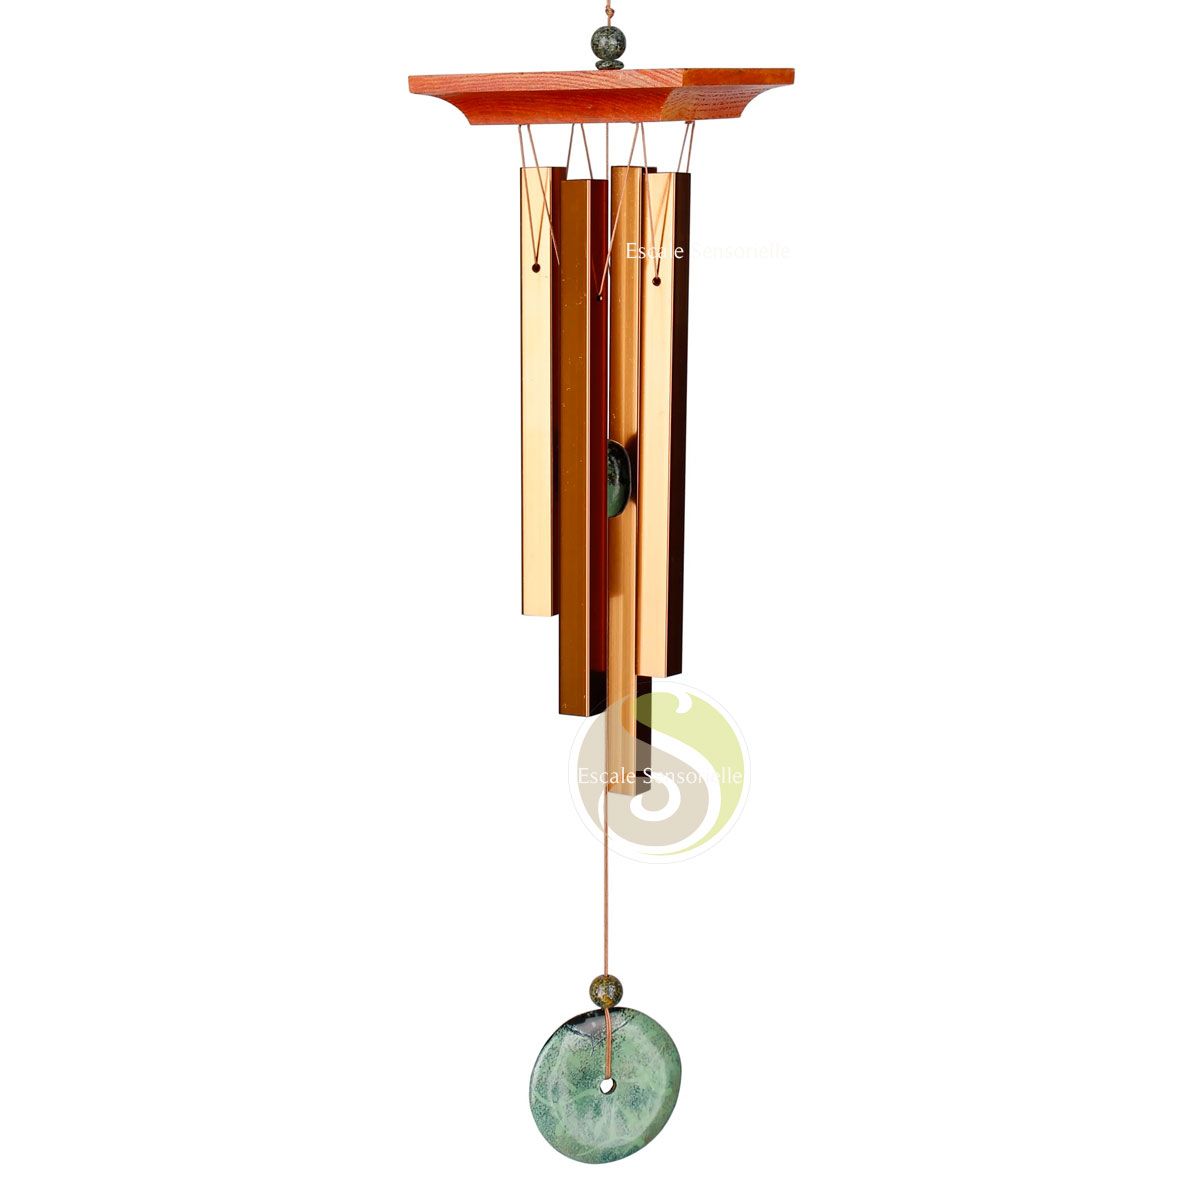 Carillon à vent turquoise Woodstock chimes accordé hauteur totale 53cm